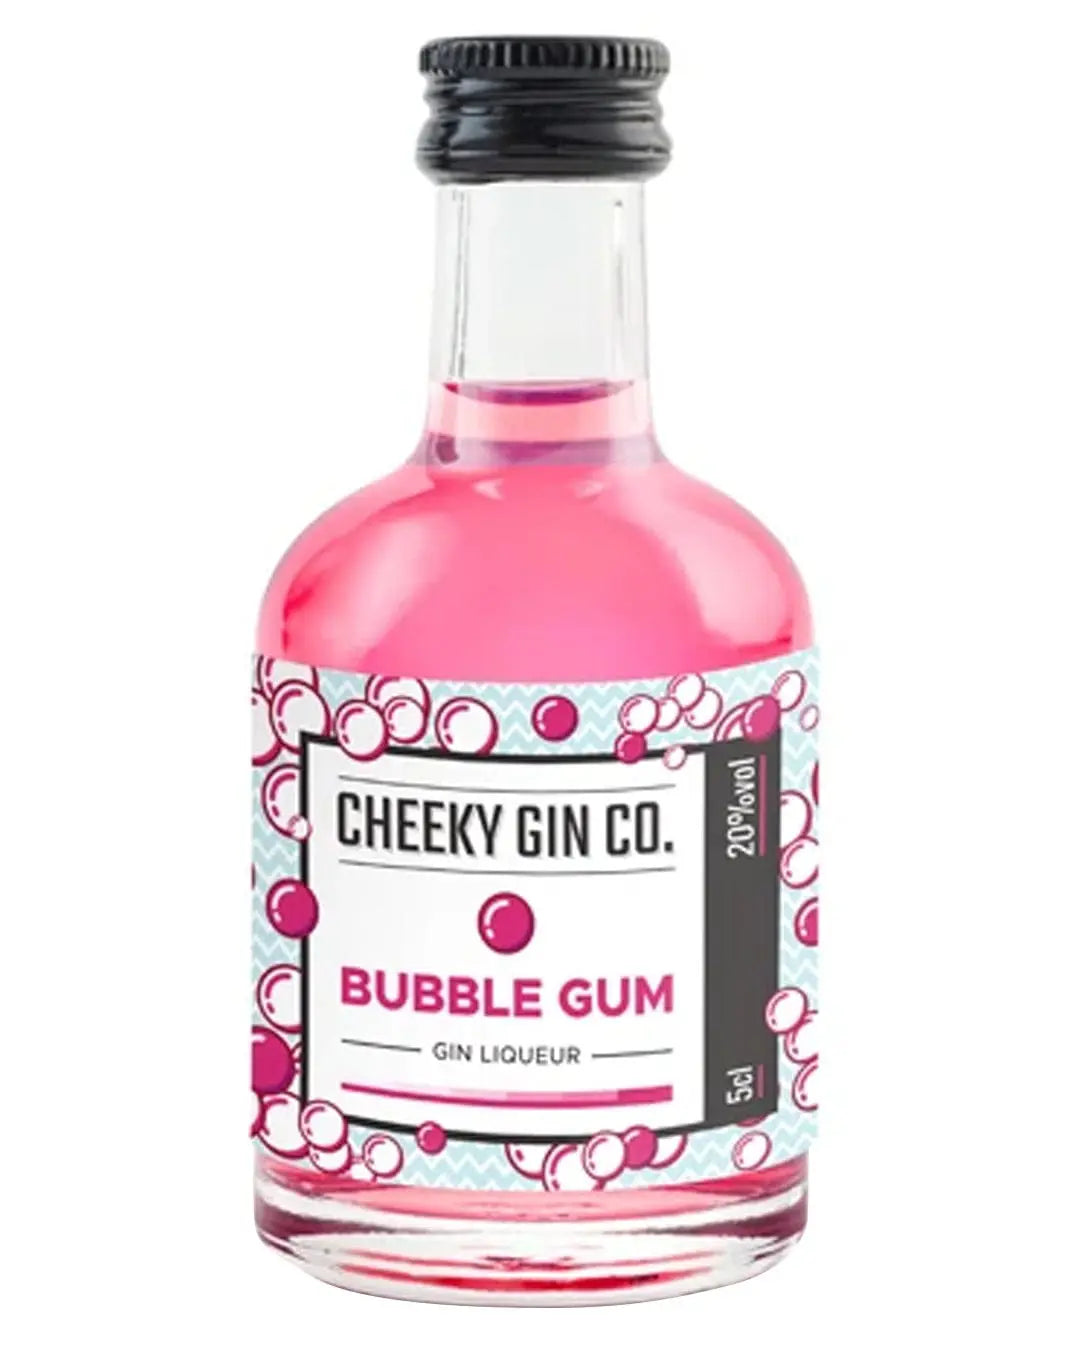 The Cheeky Gin Co. Bubblegum Gin Liqueur Miniature, 5 cl Spirit Miniatures